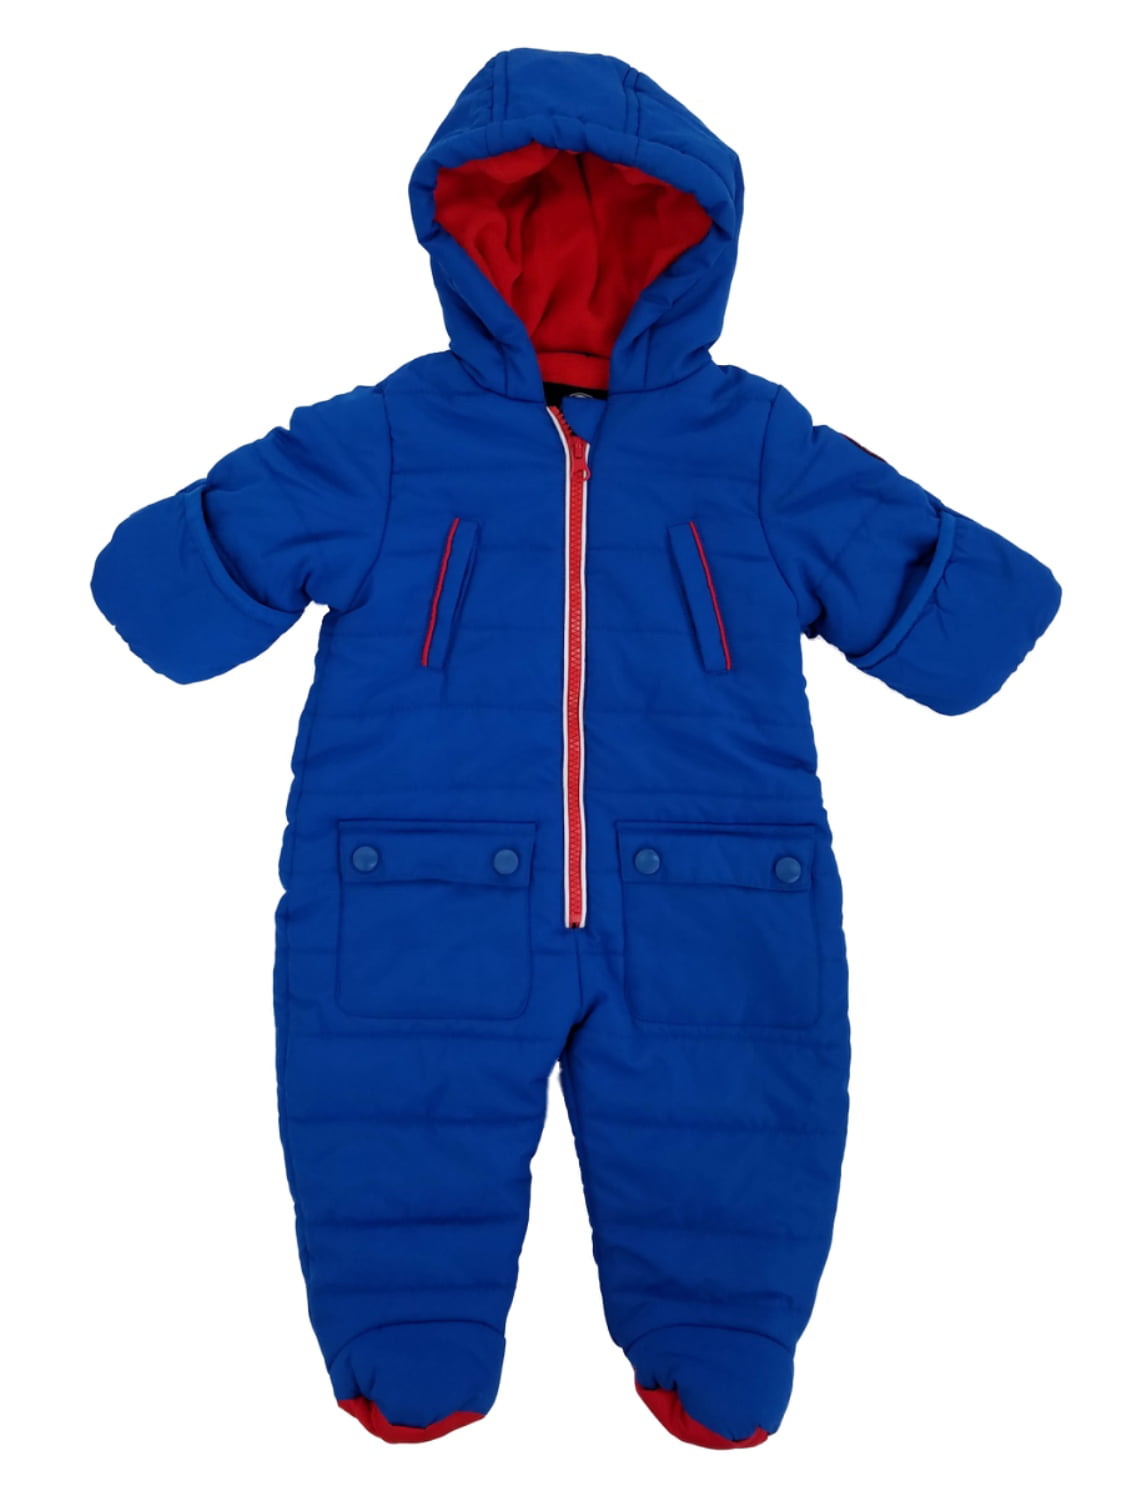 walmart infant snowsuits